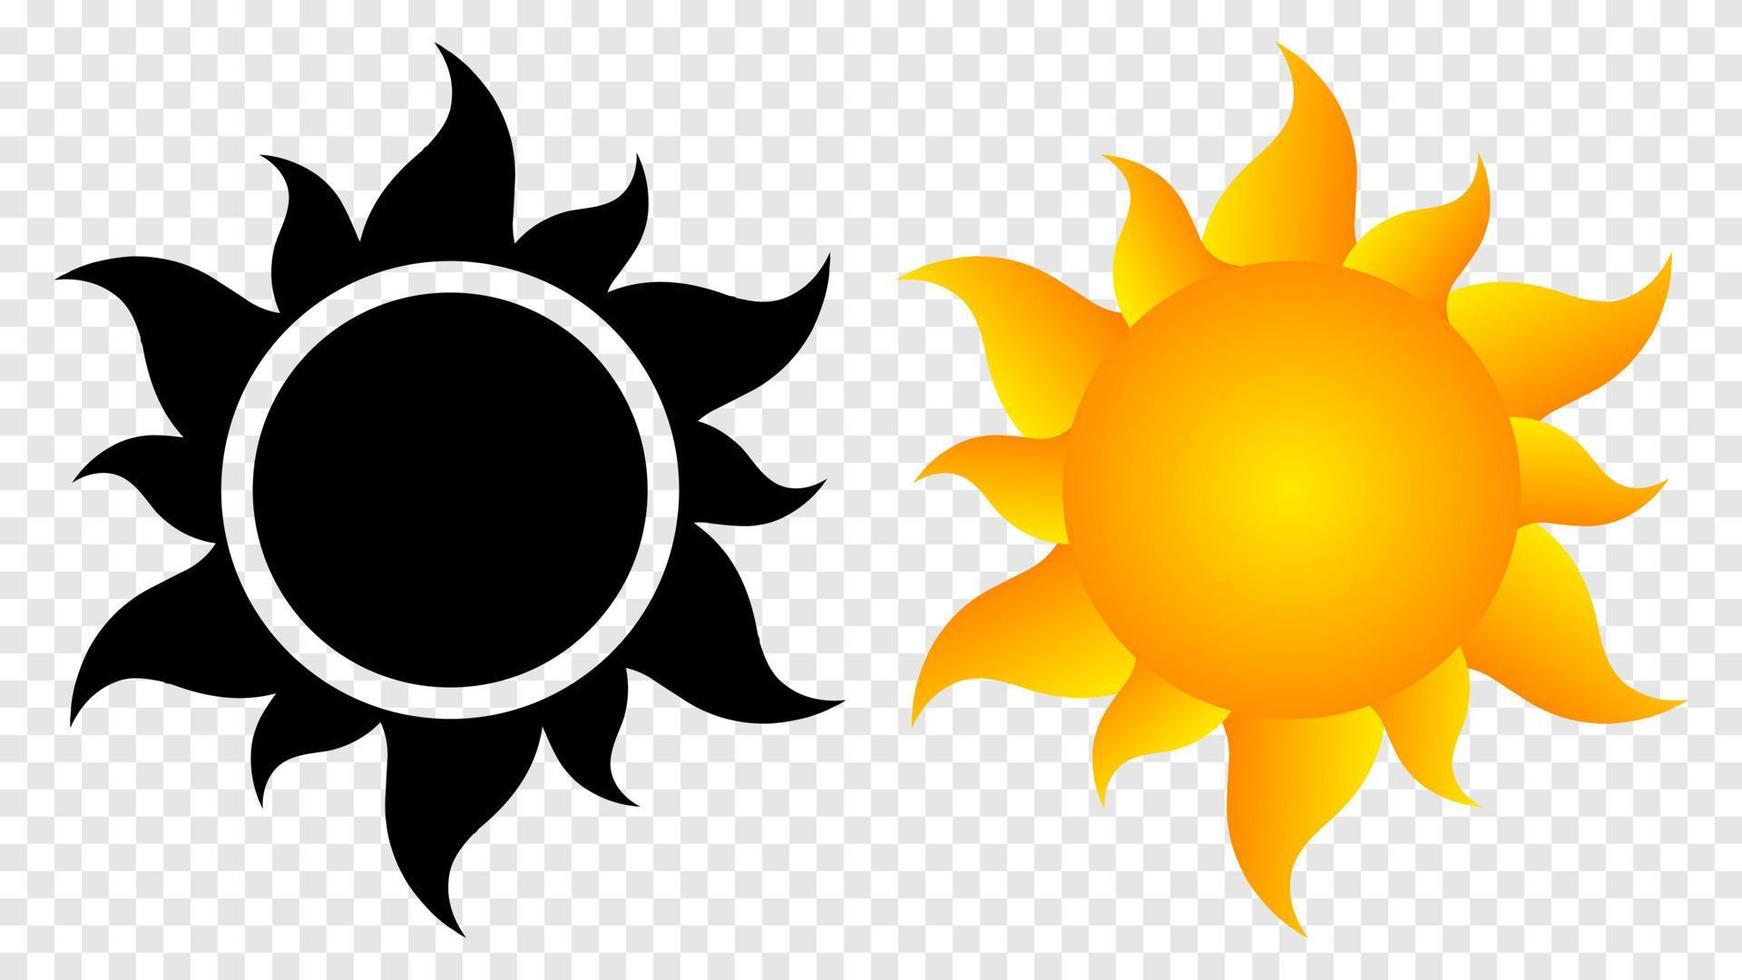 icona del sole caldo. stella arancione della calda estate e simbolo nero tempo sereno vacanza energetica gialla e abbronzatura felice sulla spiaggia vettoriale